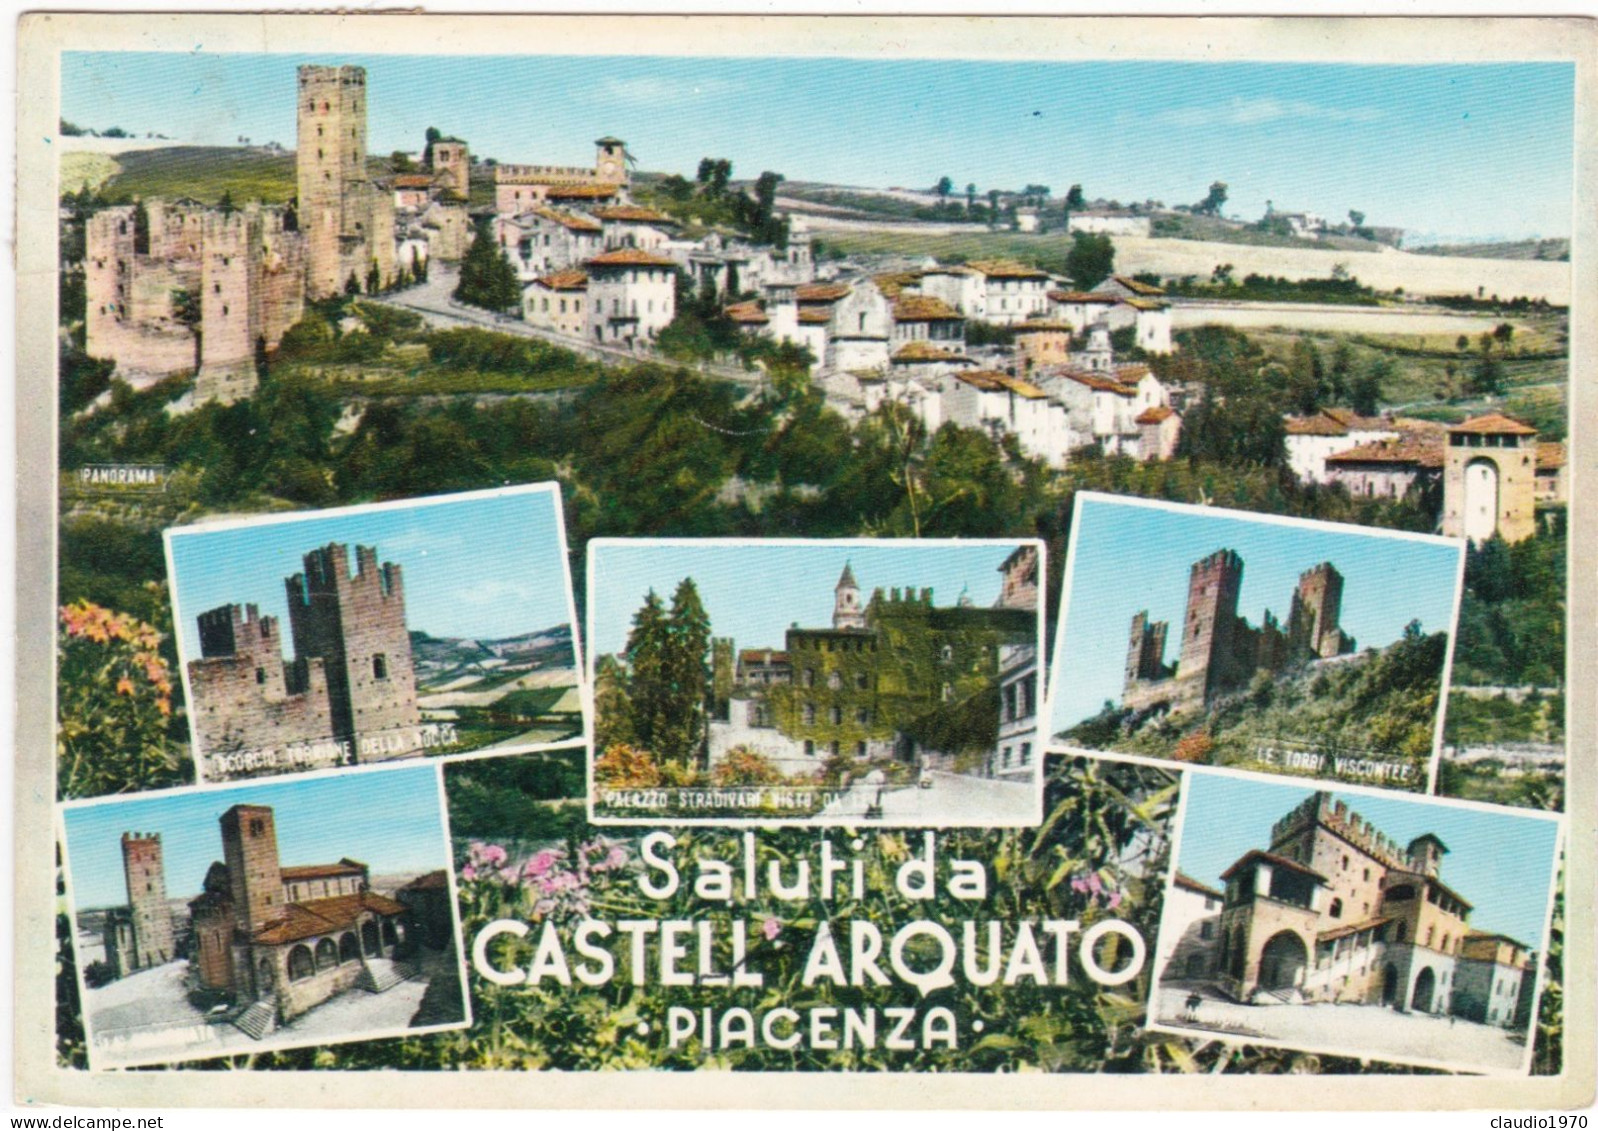 CASTELL' ARQUATO (PIACENZA) - CARTOLINA  -  SALUTI DA CASTELL' ARQUATO - VIAGGIATA PER MILANO - 1968 - Piacenza